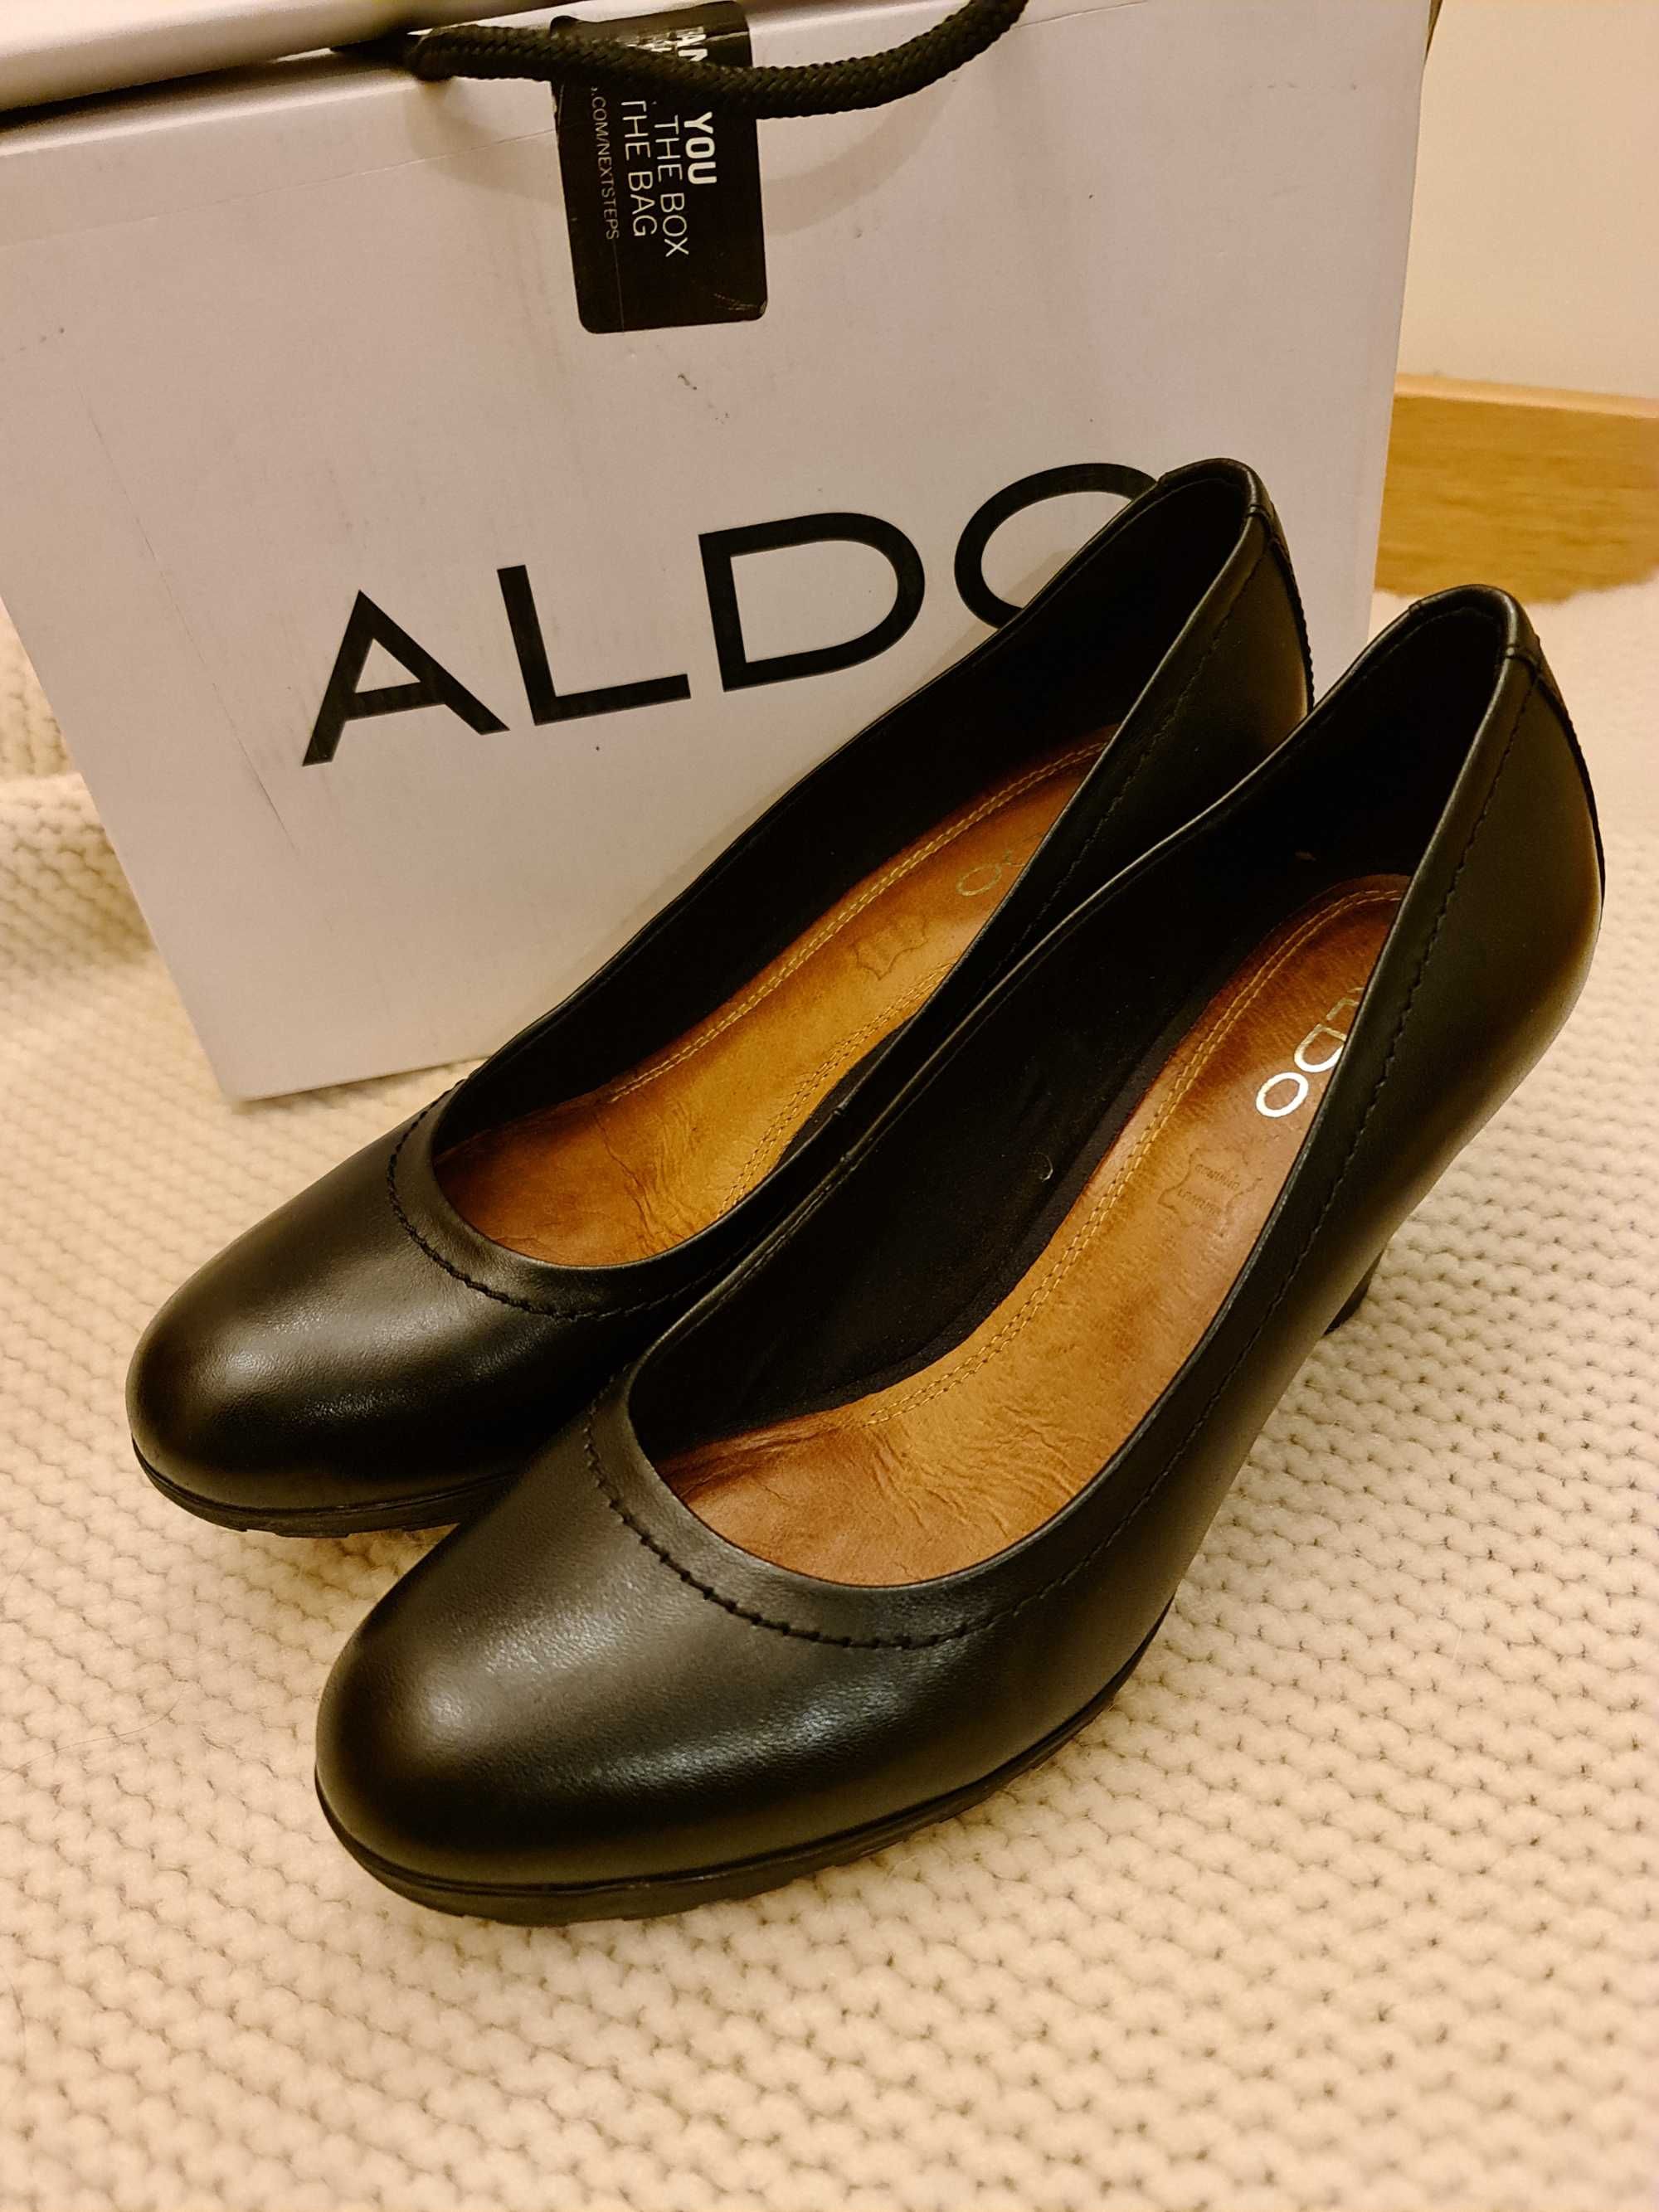 Sapatos Aldo em pele, tamanho 39, calçados uma única vez